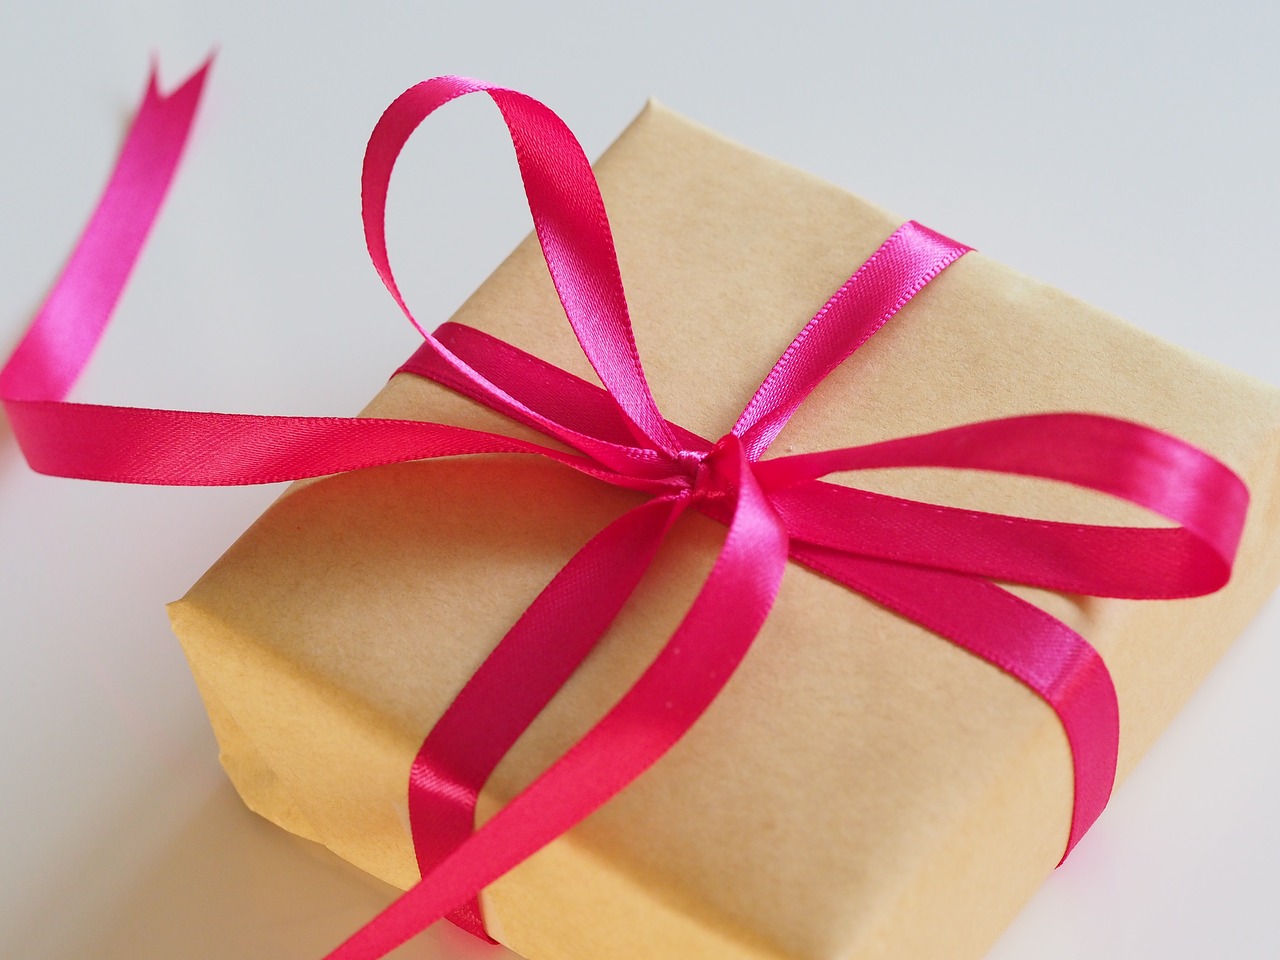 Pudełka z podziękowaniami – nowatorska forma wręczania prezentów bliskim